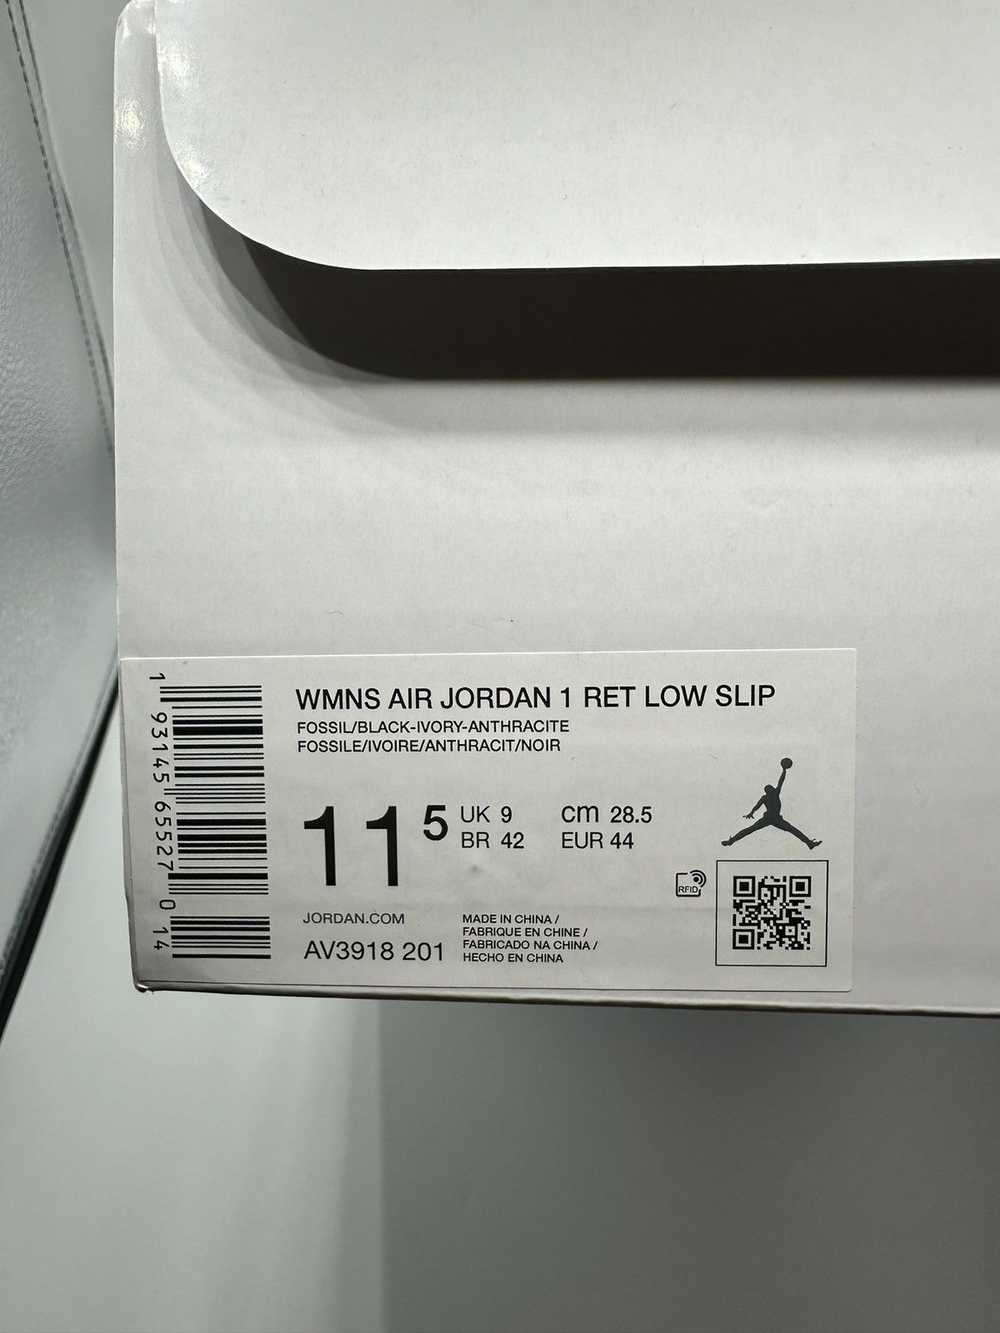 Jordan Brand Air Jordan 1 Low Slip Wmns “Fossil” - image 7